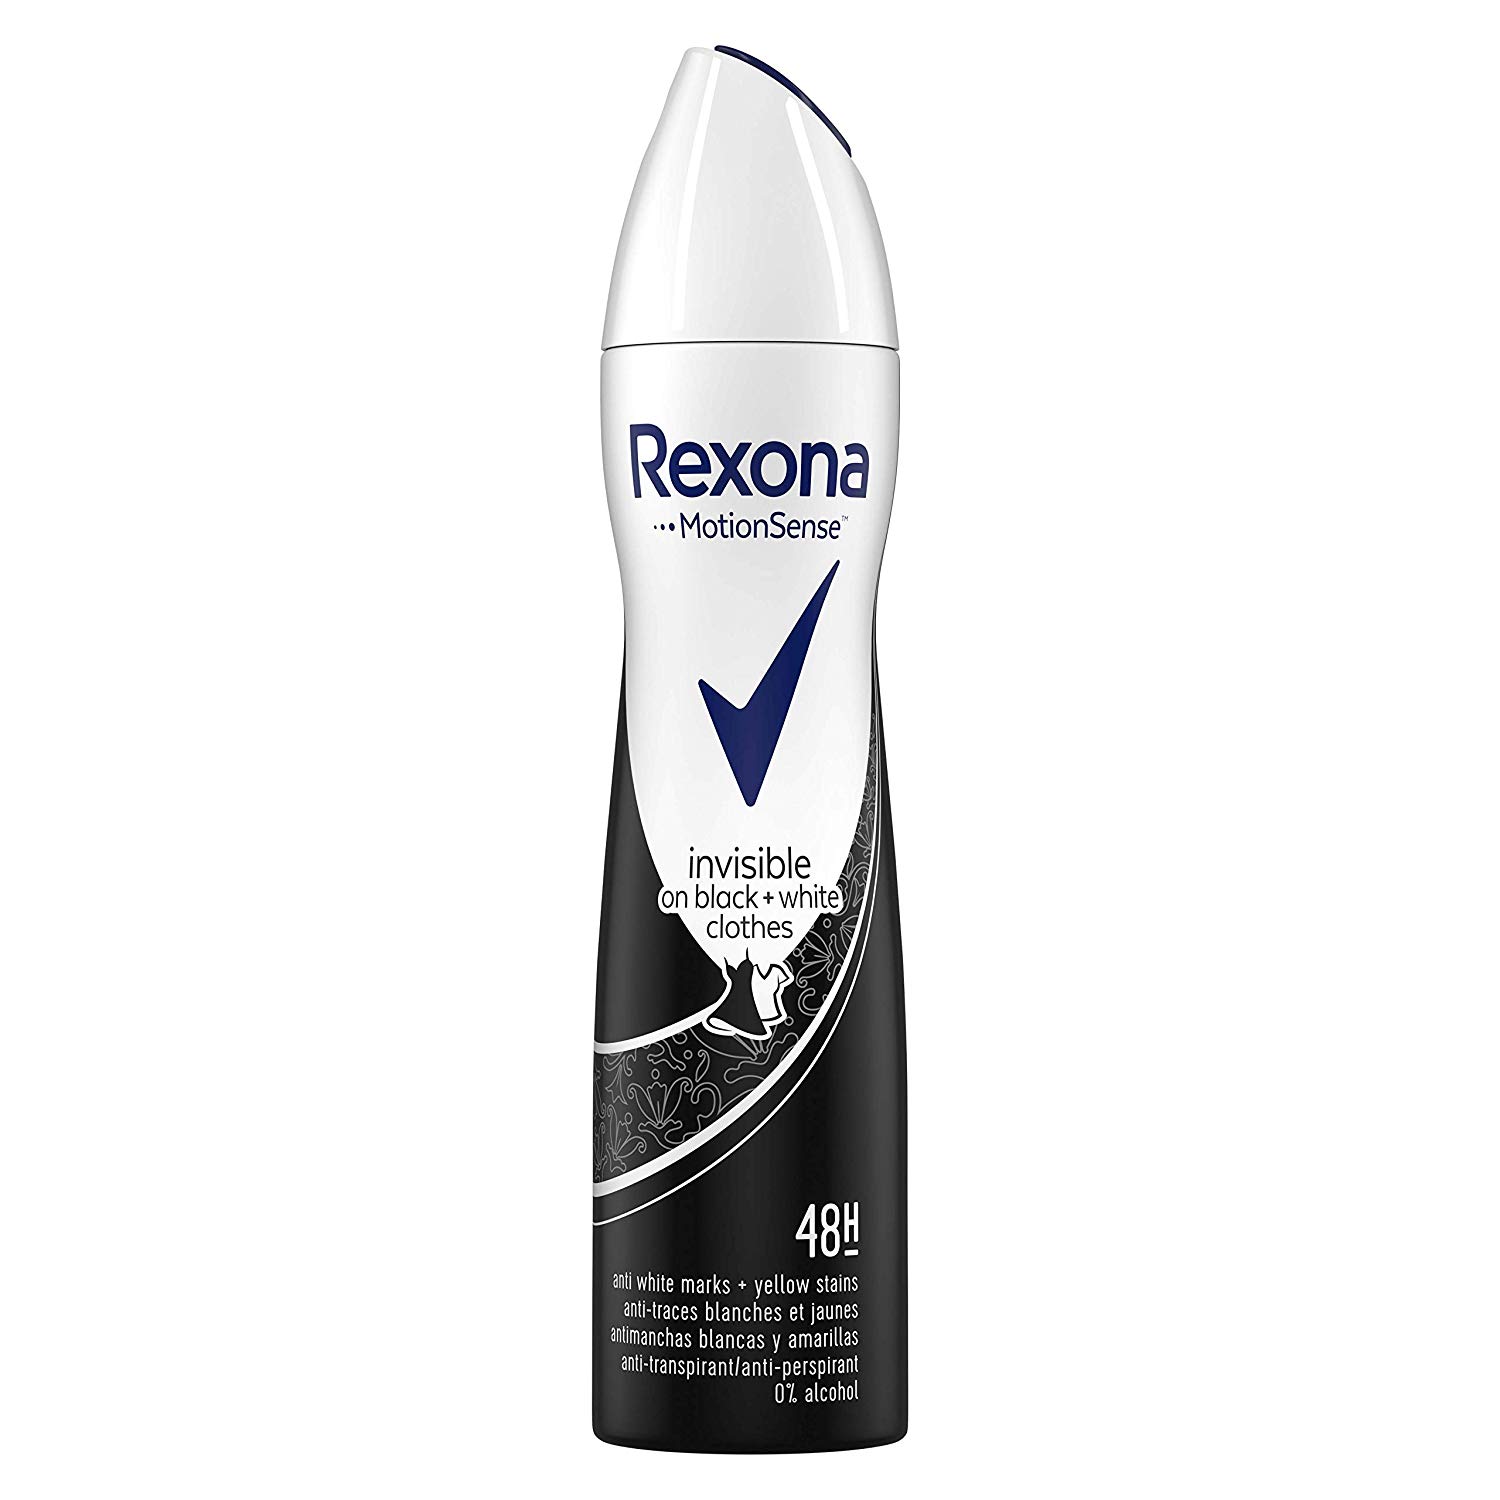 Rexona desodorante 6x200ml solo 11,9€